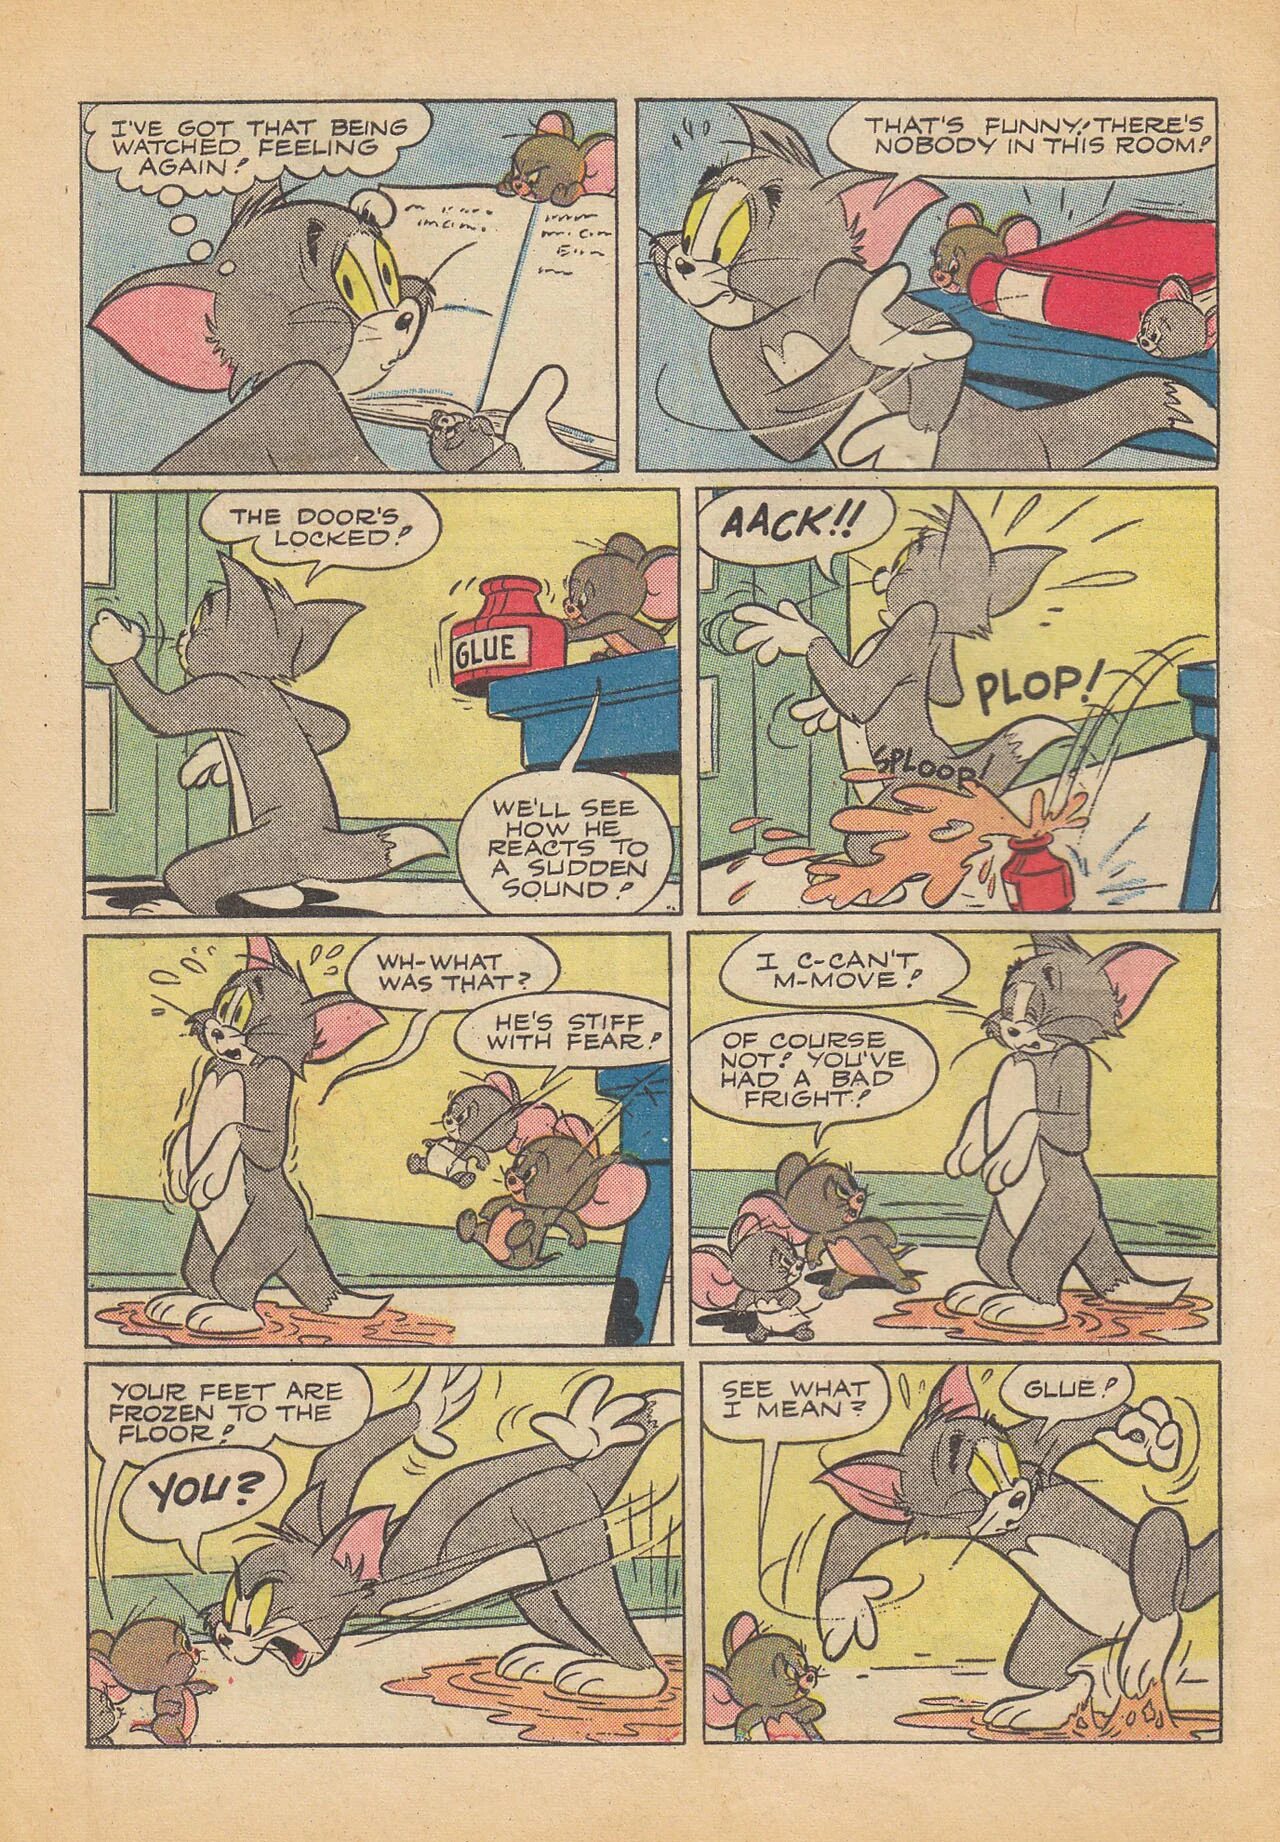 Комикс том и Джерри. Том и Джерри комикс шип. Фанфики про Тома и Джерри.